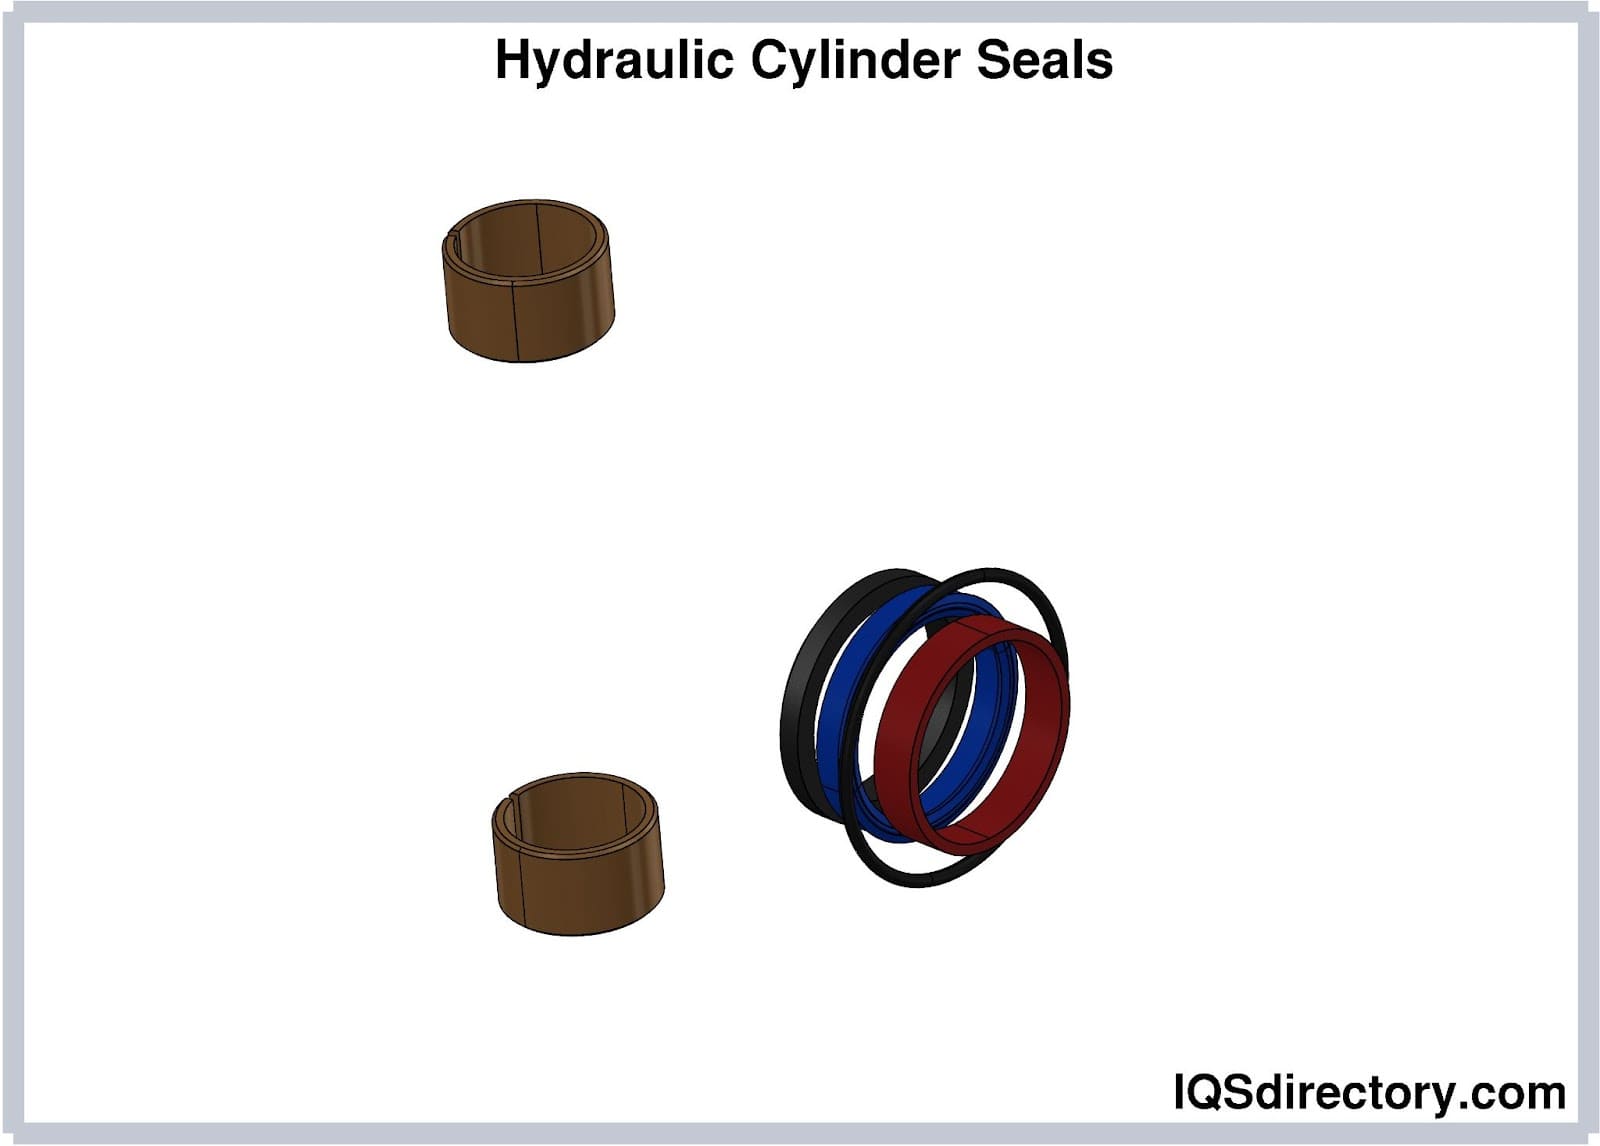 Hydraulic Cylinder Seals